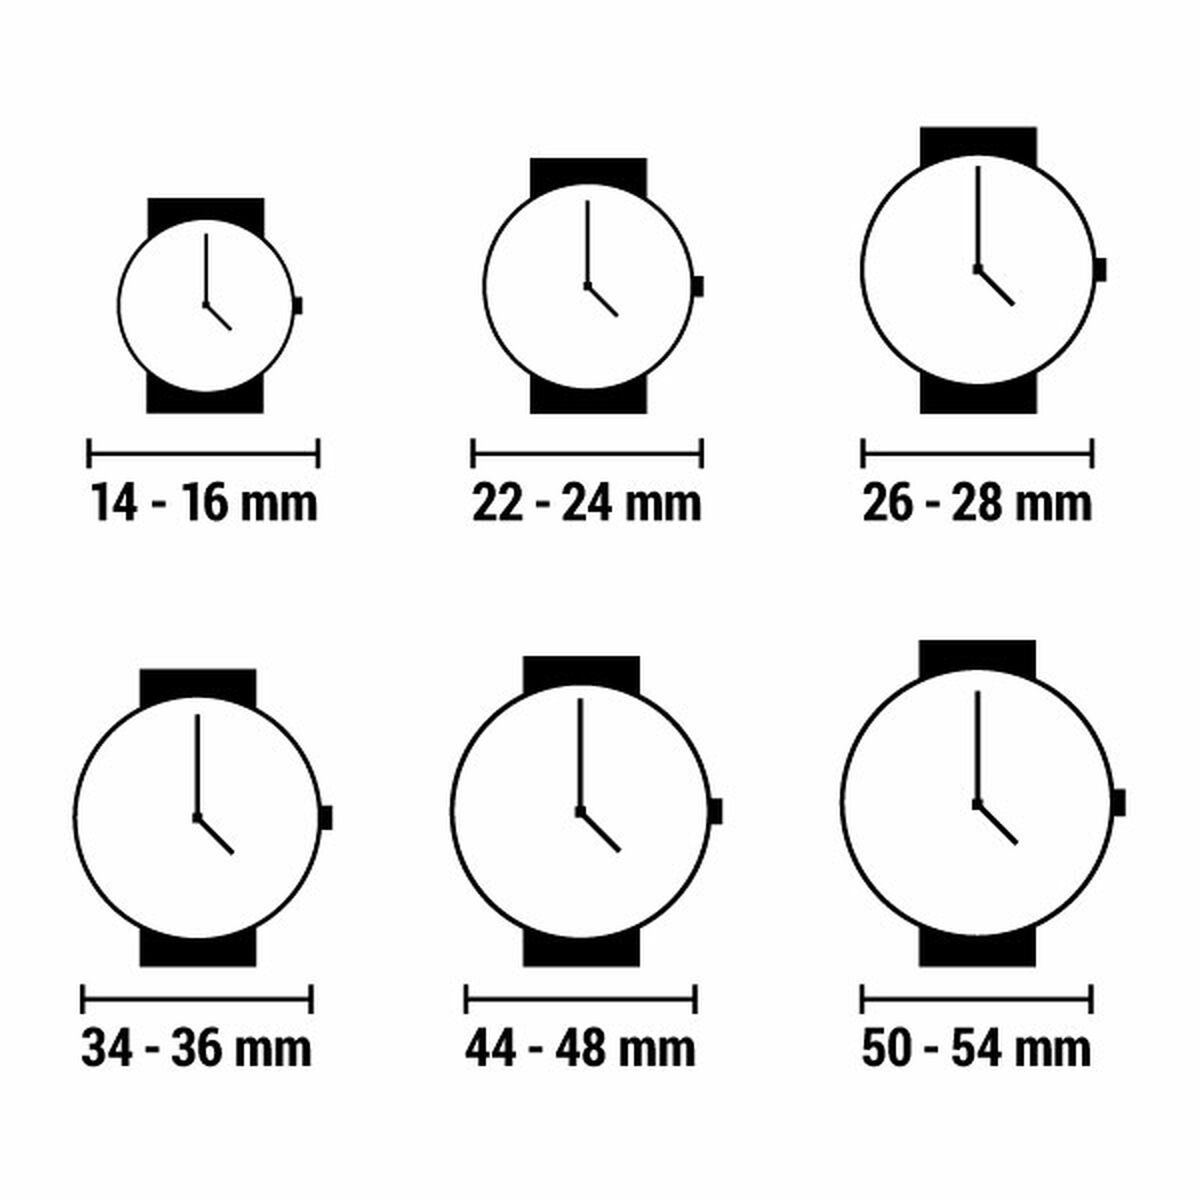 Horloge Uniseks Casio CALCULATOR (Ø 35 mm)